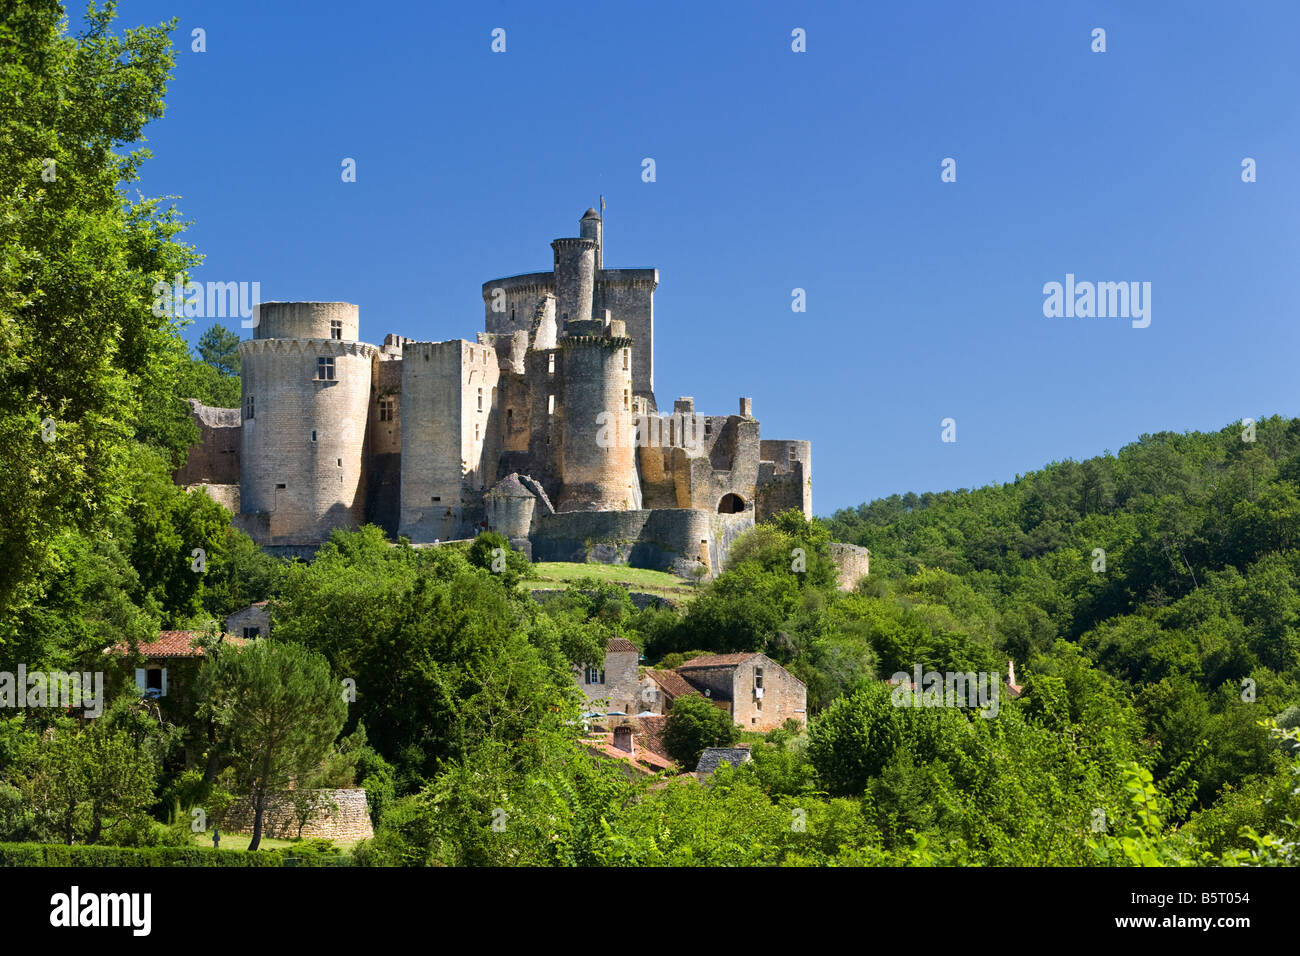 Chateau de Bonaguil castle in Lot et Garonne, Southwest France, Europe Stock Photo